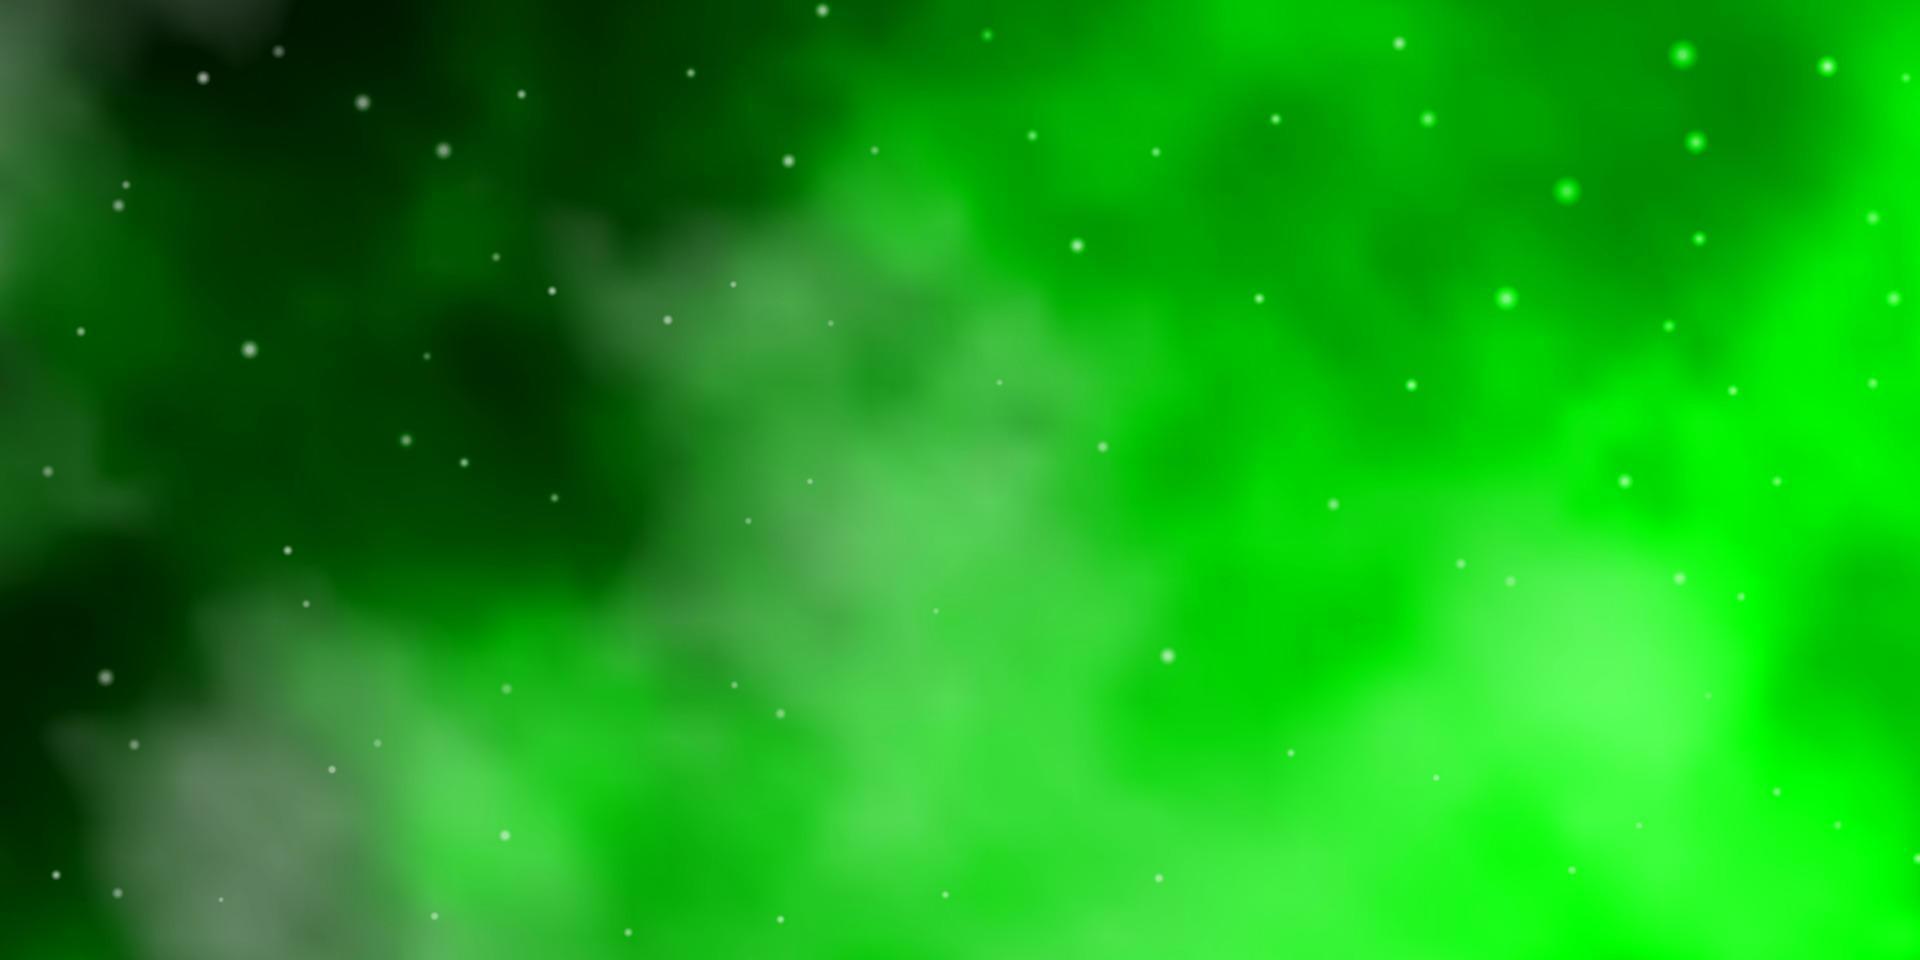 fundo do vetor verde claro com estrelas pequenas e grandes.